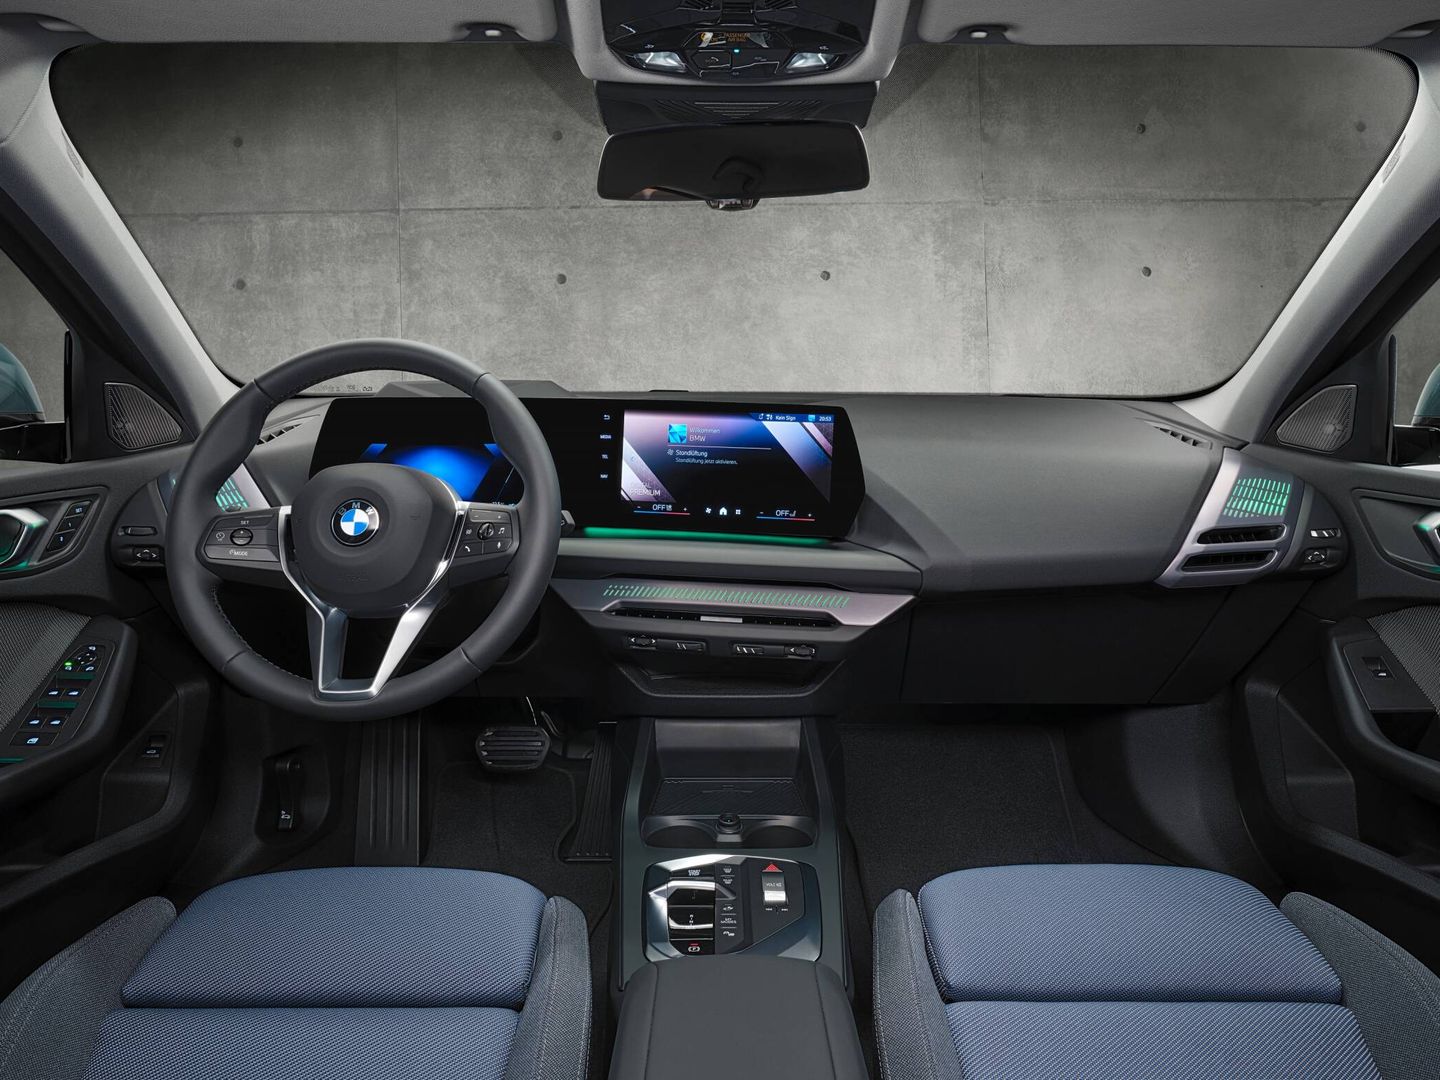 BMW dice que ha reducido el número de mandos, y que las pantallas tienen más protagonismo.